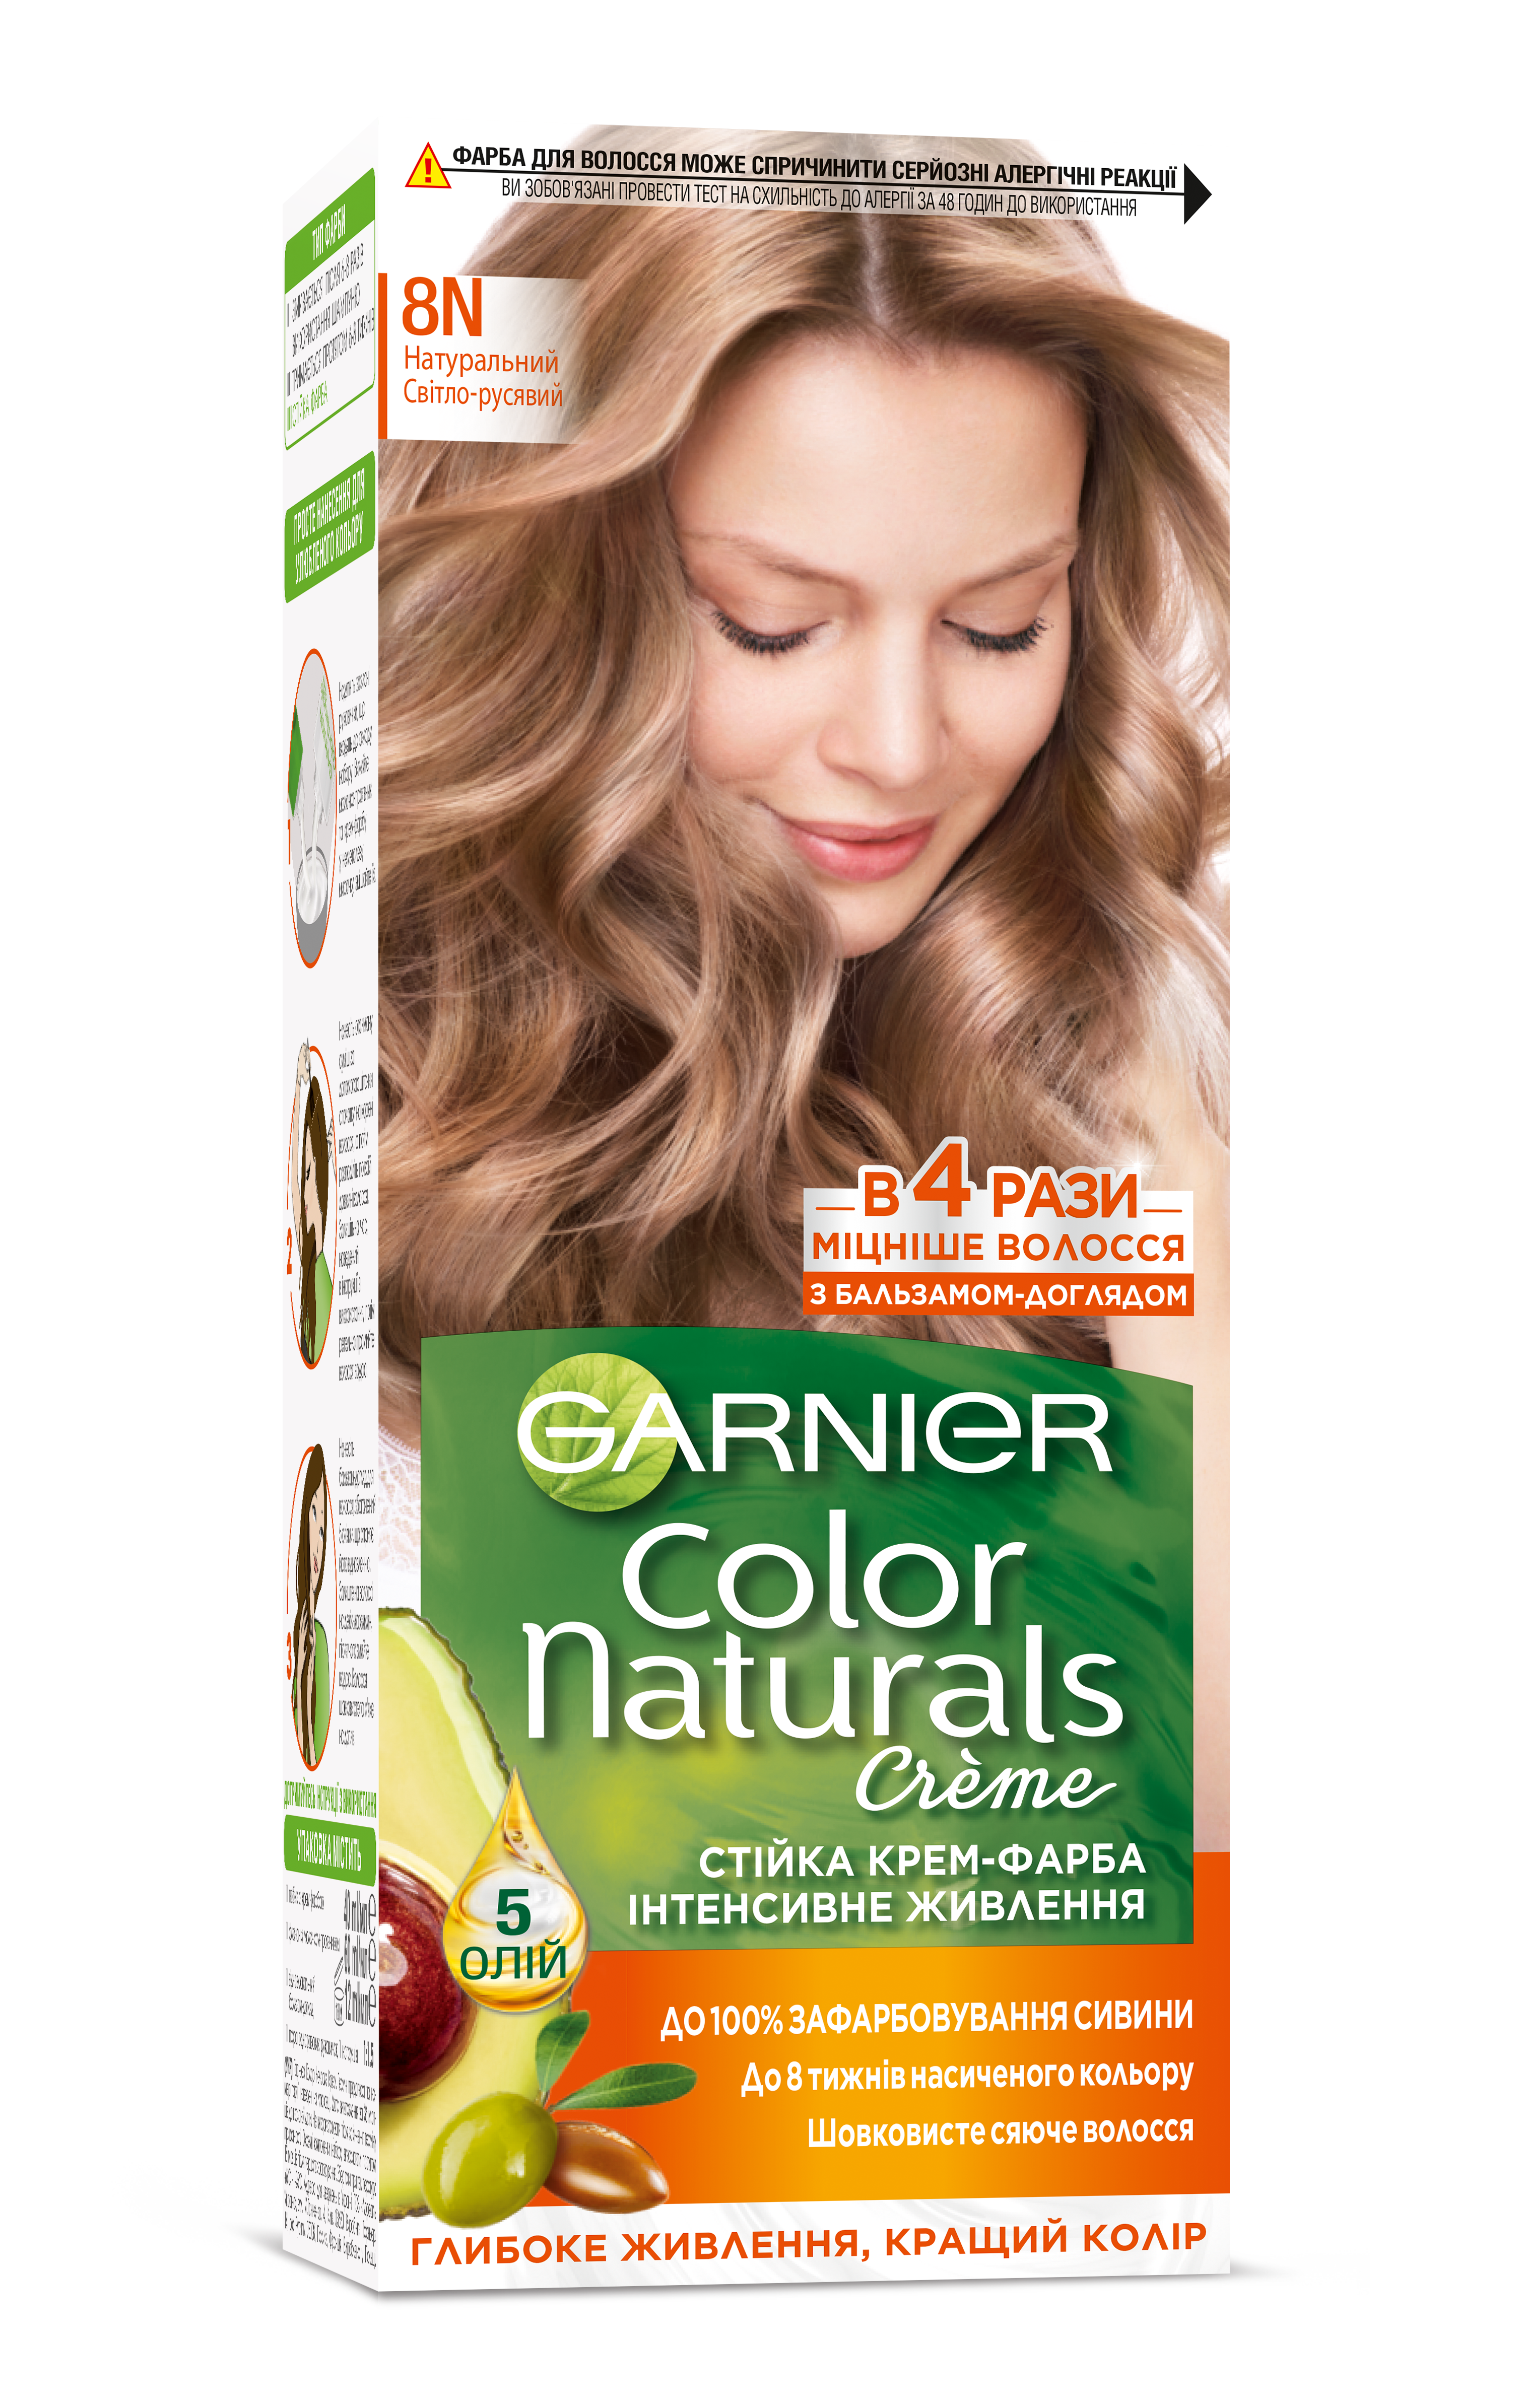 Краска для волос Garnier Color Naturals, тон 8N (Натуральный светло-русый), 112 мл (C6543000) - фото 1